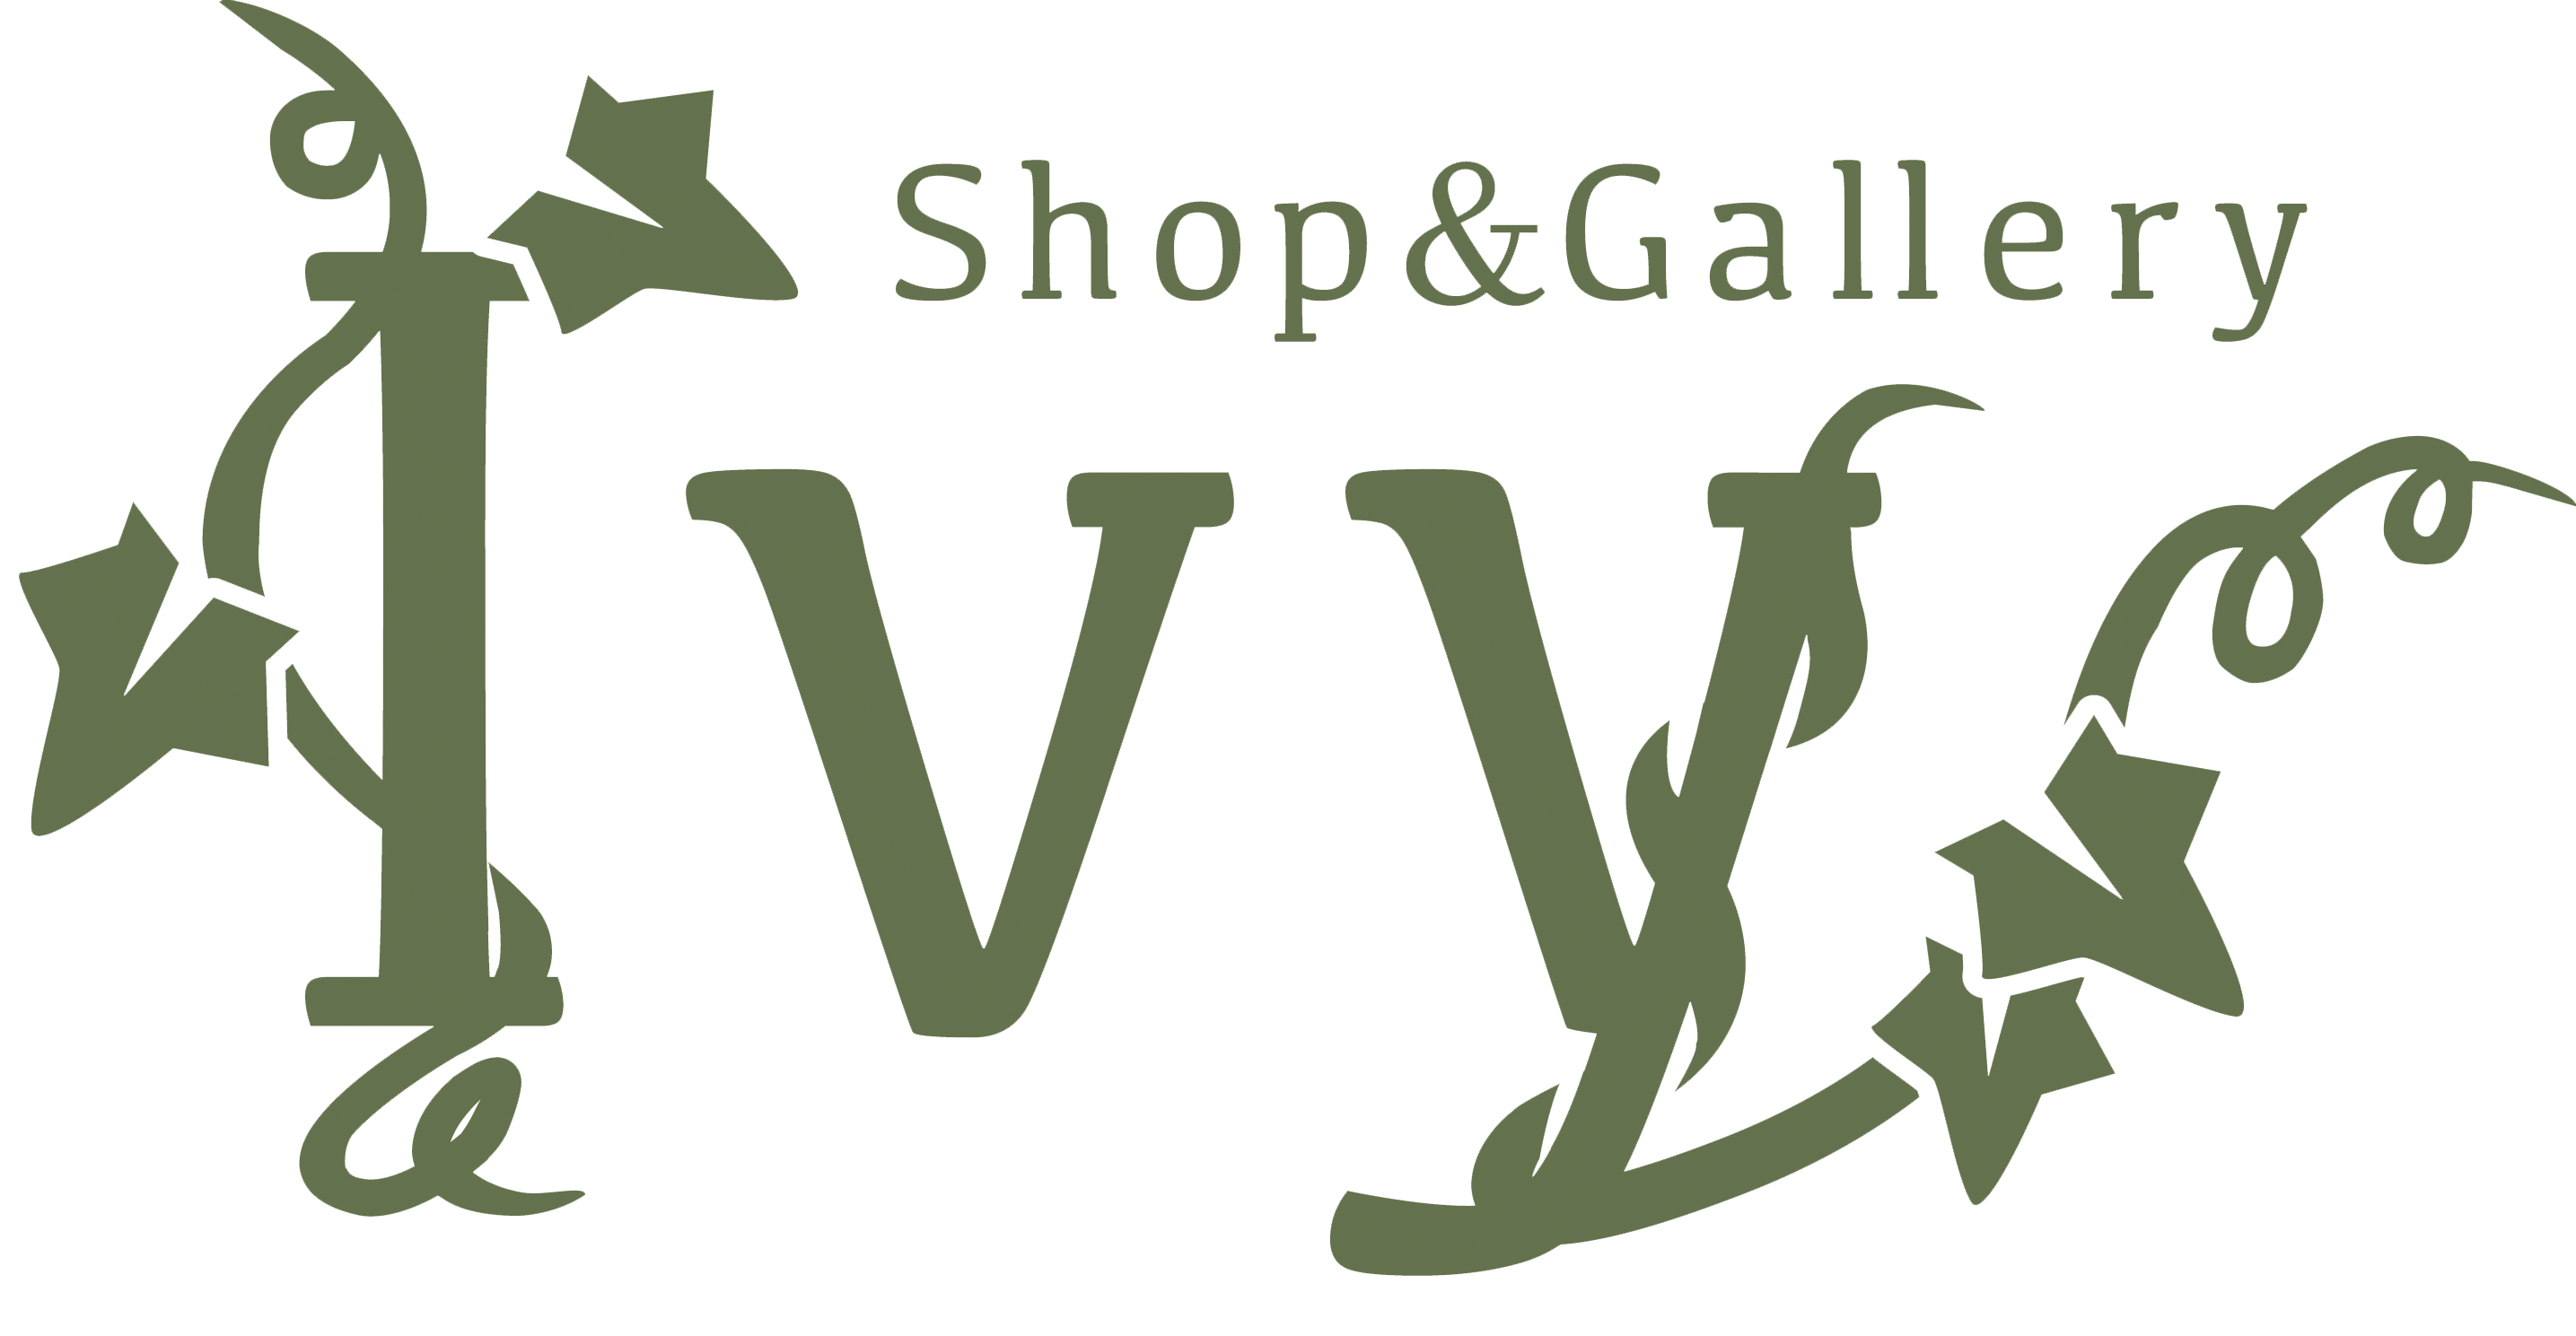 Shop＆Gallery Ivy